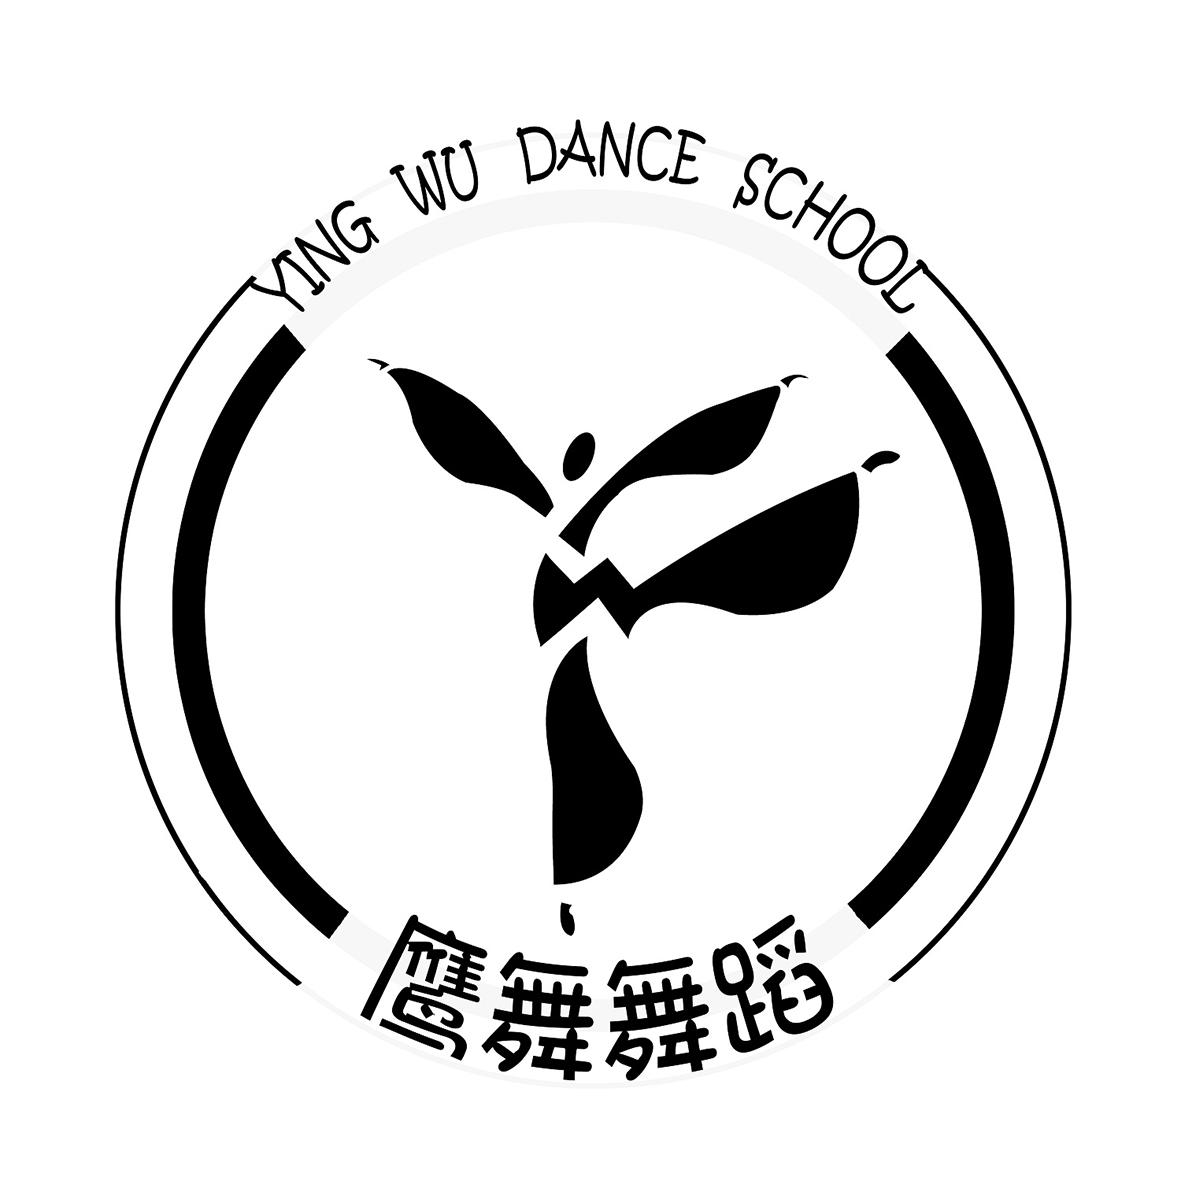 舞蹈室logo图片大全图片